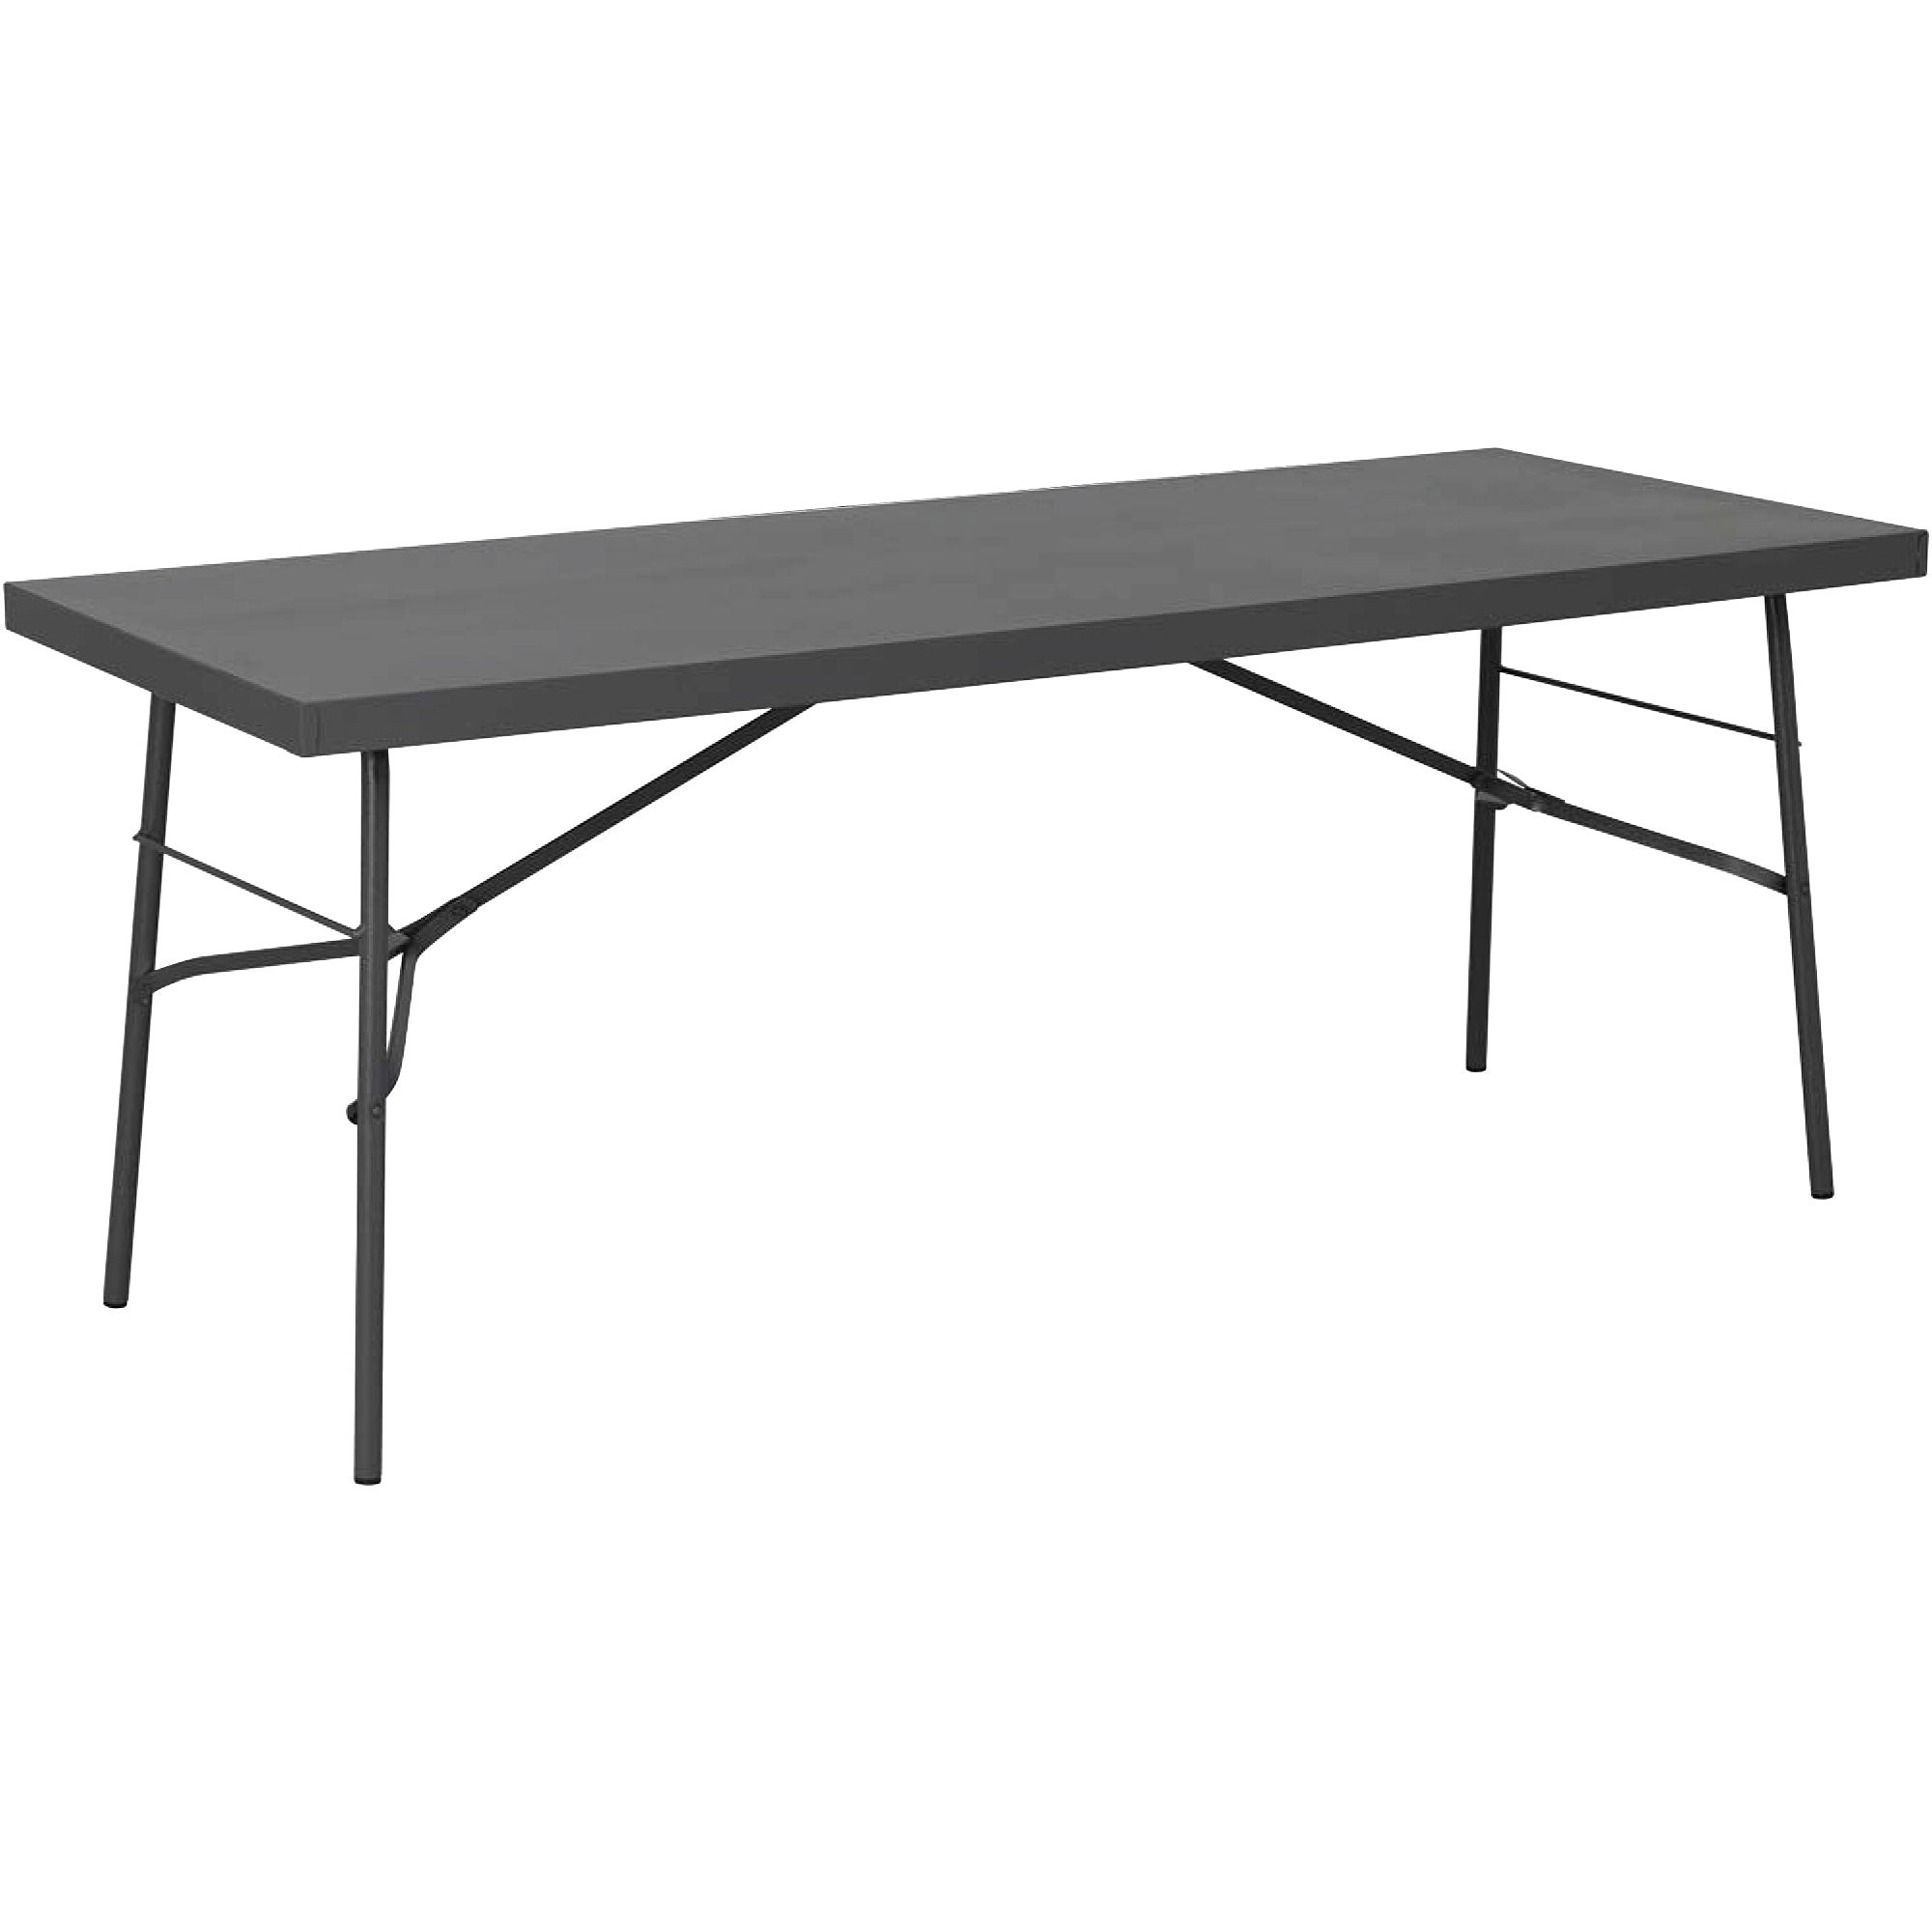 Steel Folding Table